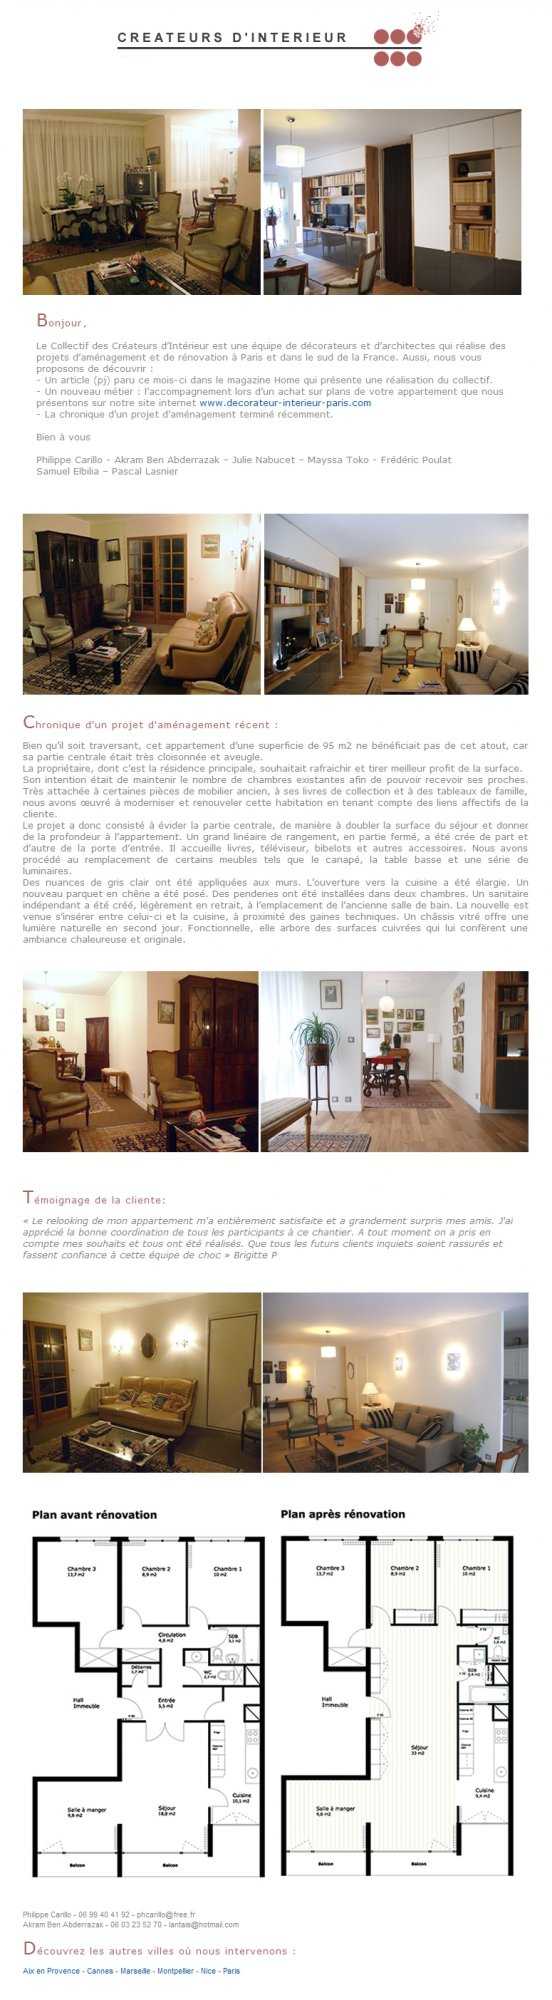 Newsletter de juin 2011 sur la rénovation et l'optimisation d'un appartement sombre de 95m2.